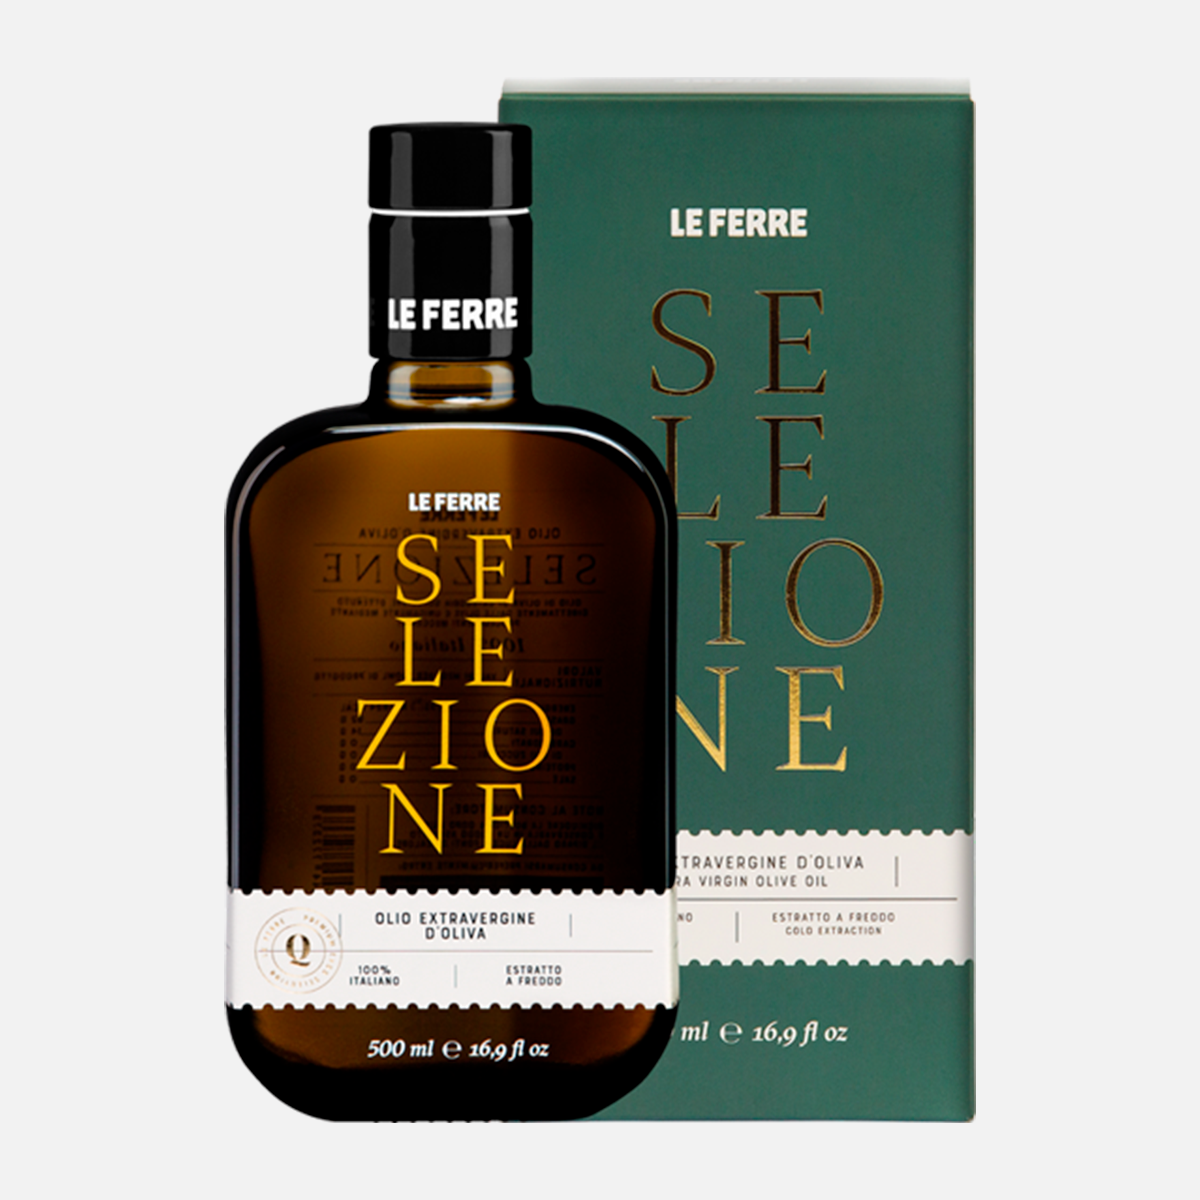 Le Ferre "Selezione" EVO oil